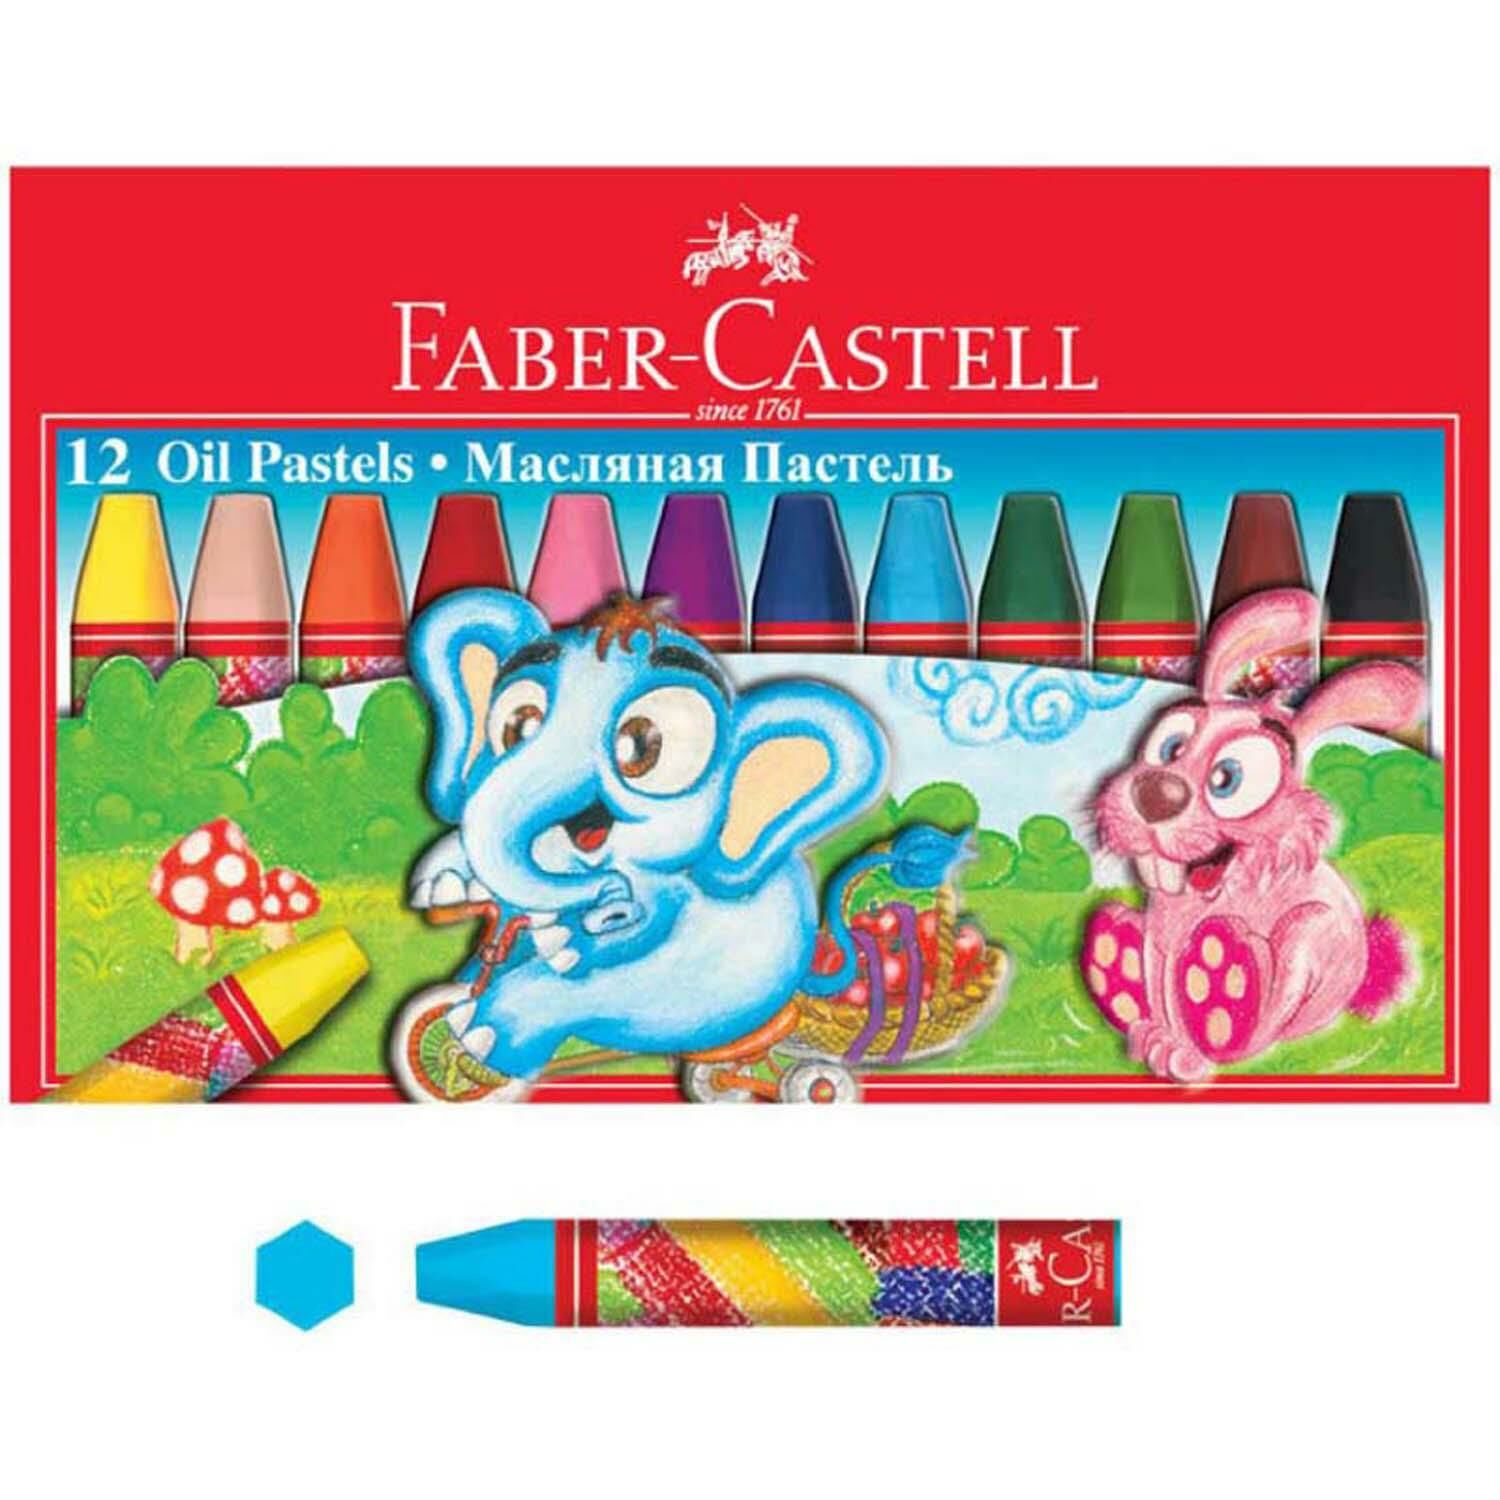 Faber-Castell Pastel Boya Karton Kutu 24 Renk